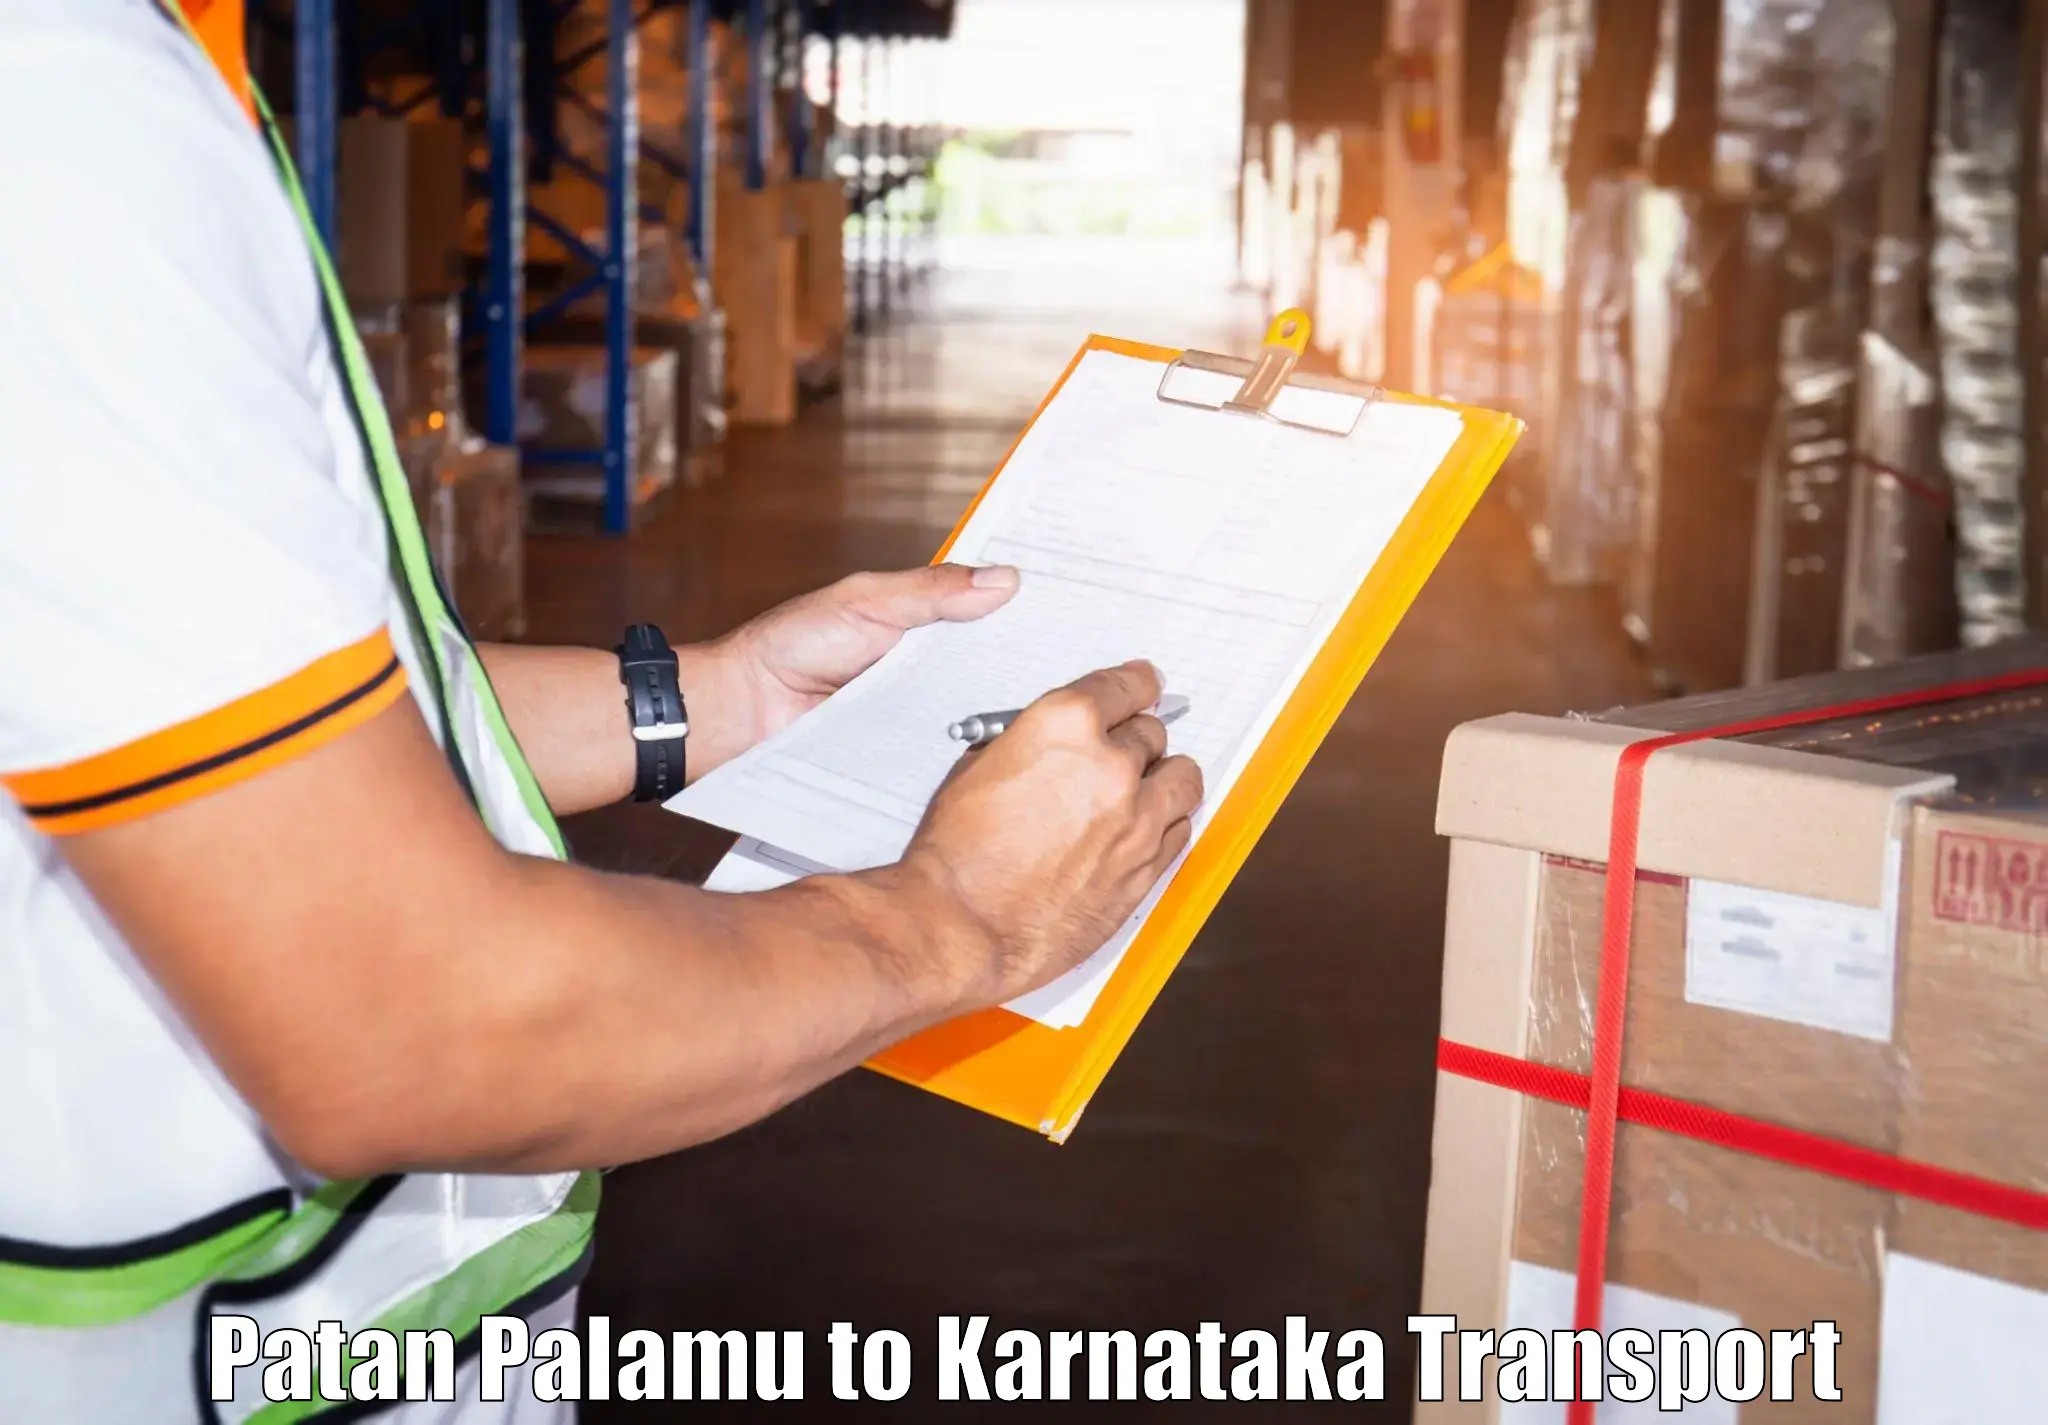 Lorry transport service Patan Palamu to Heggadadevankote